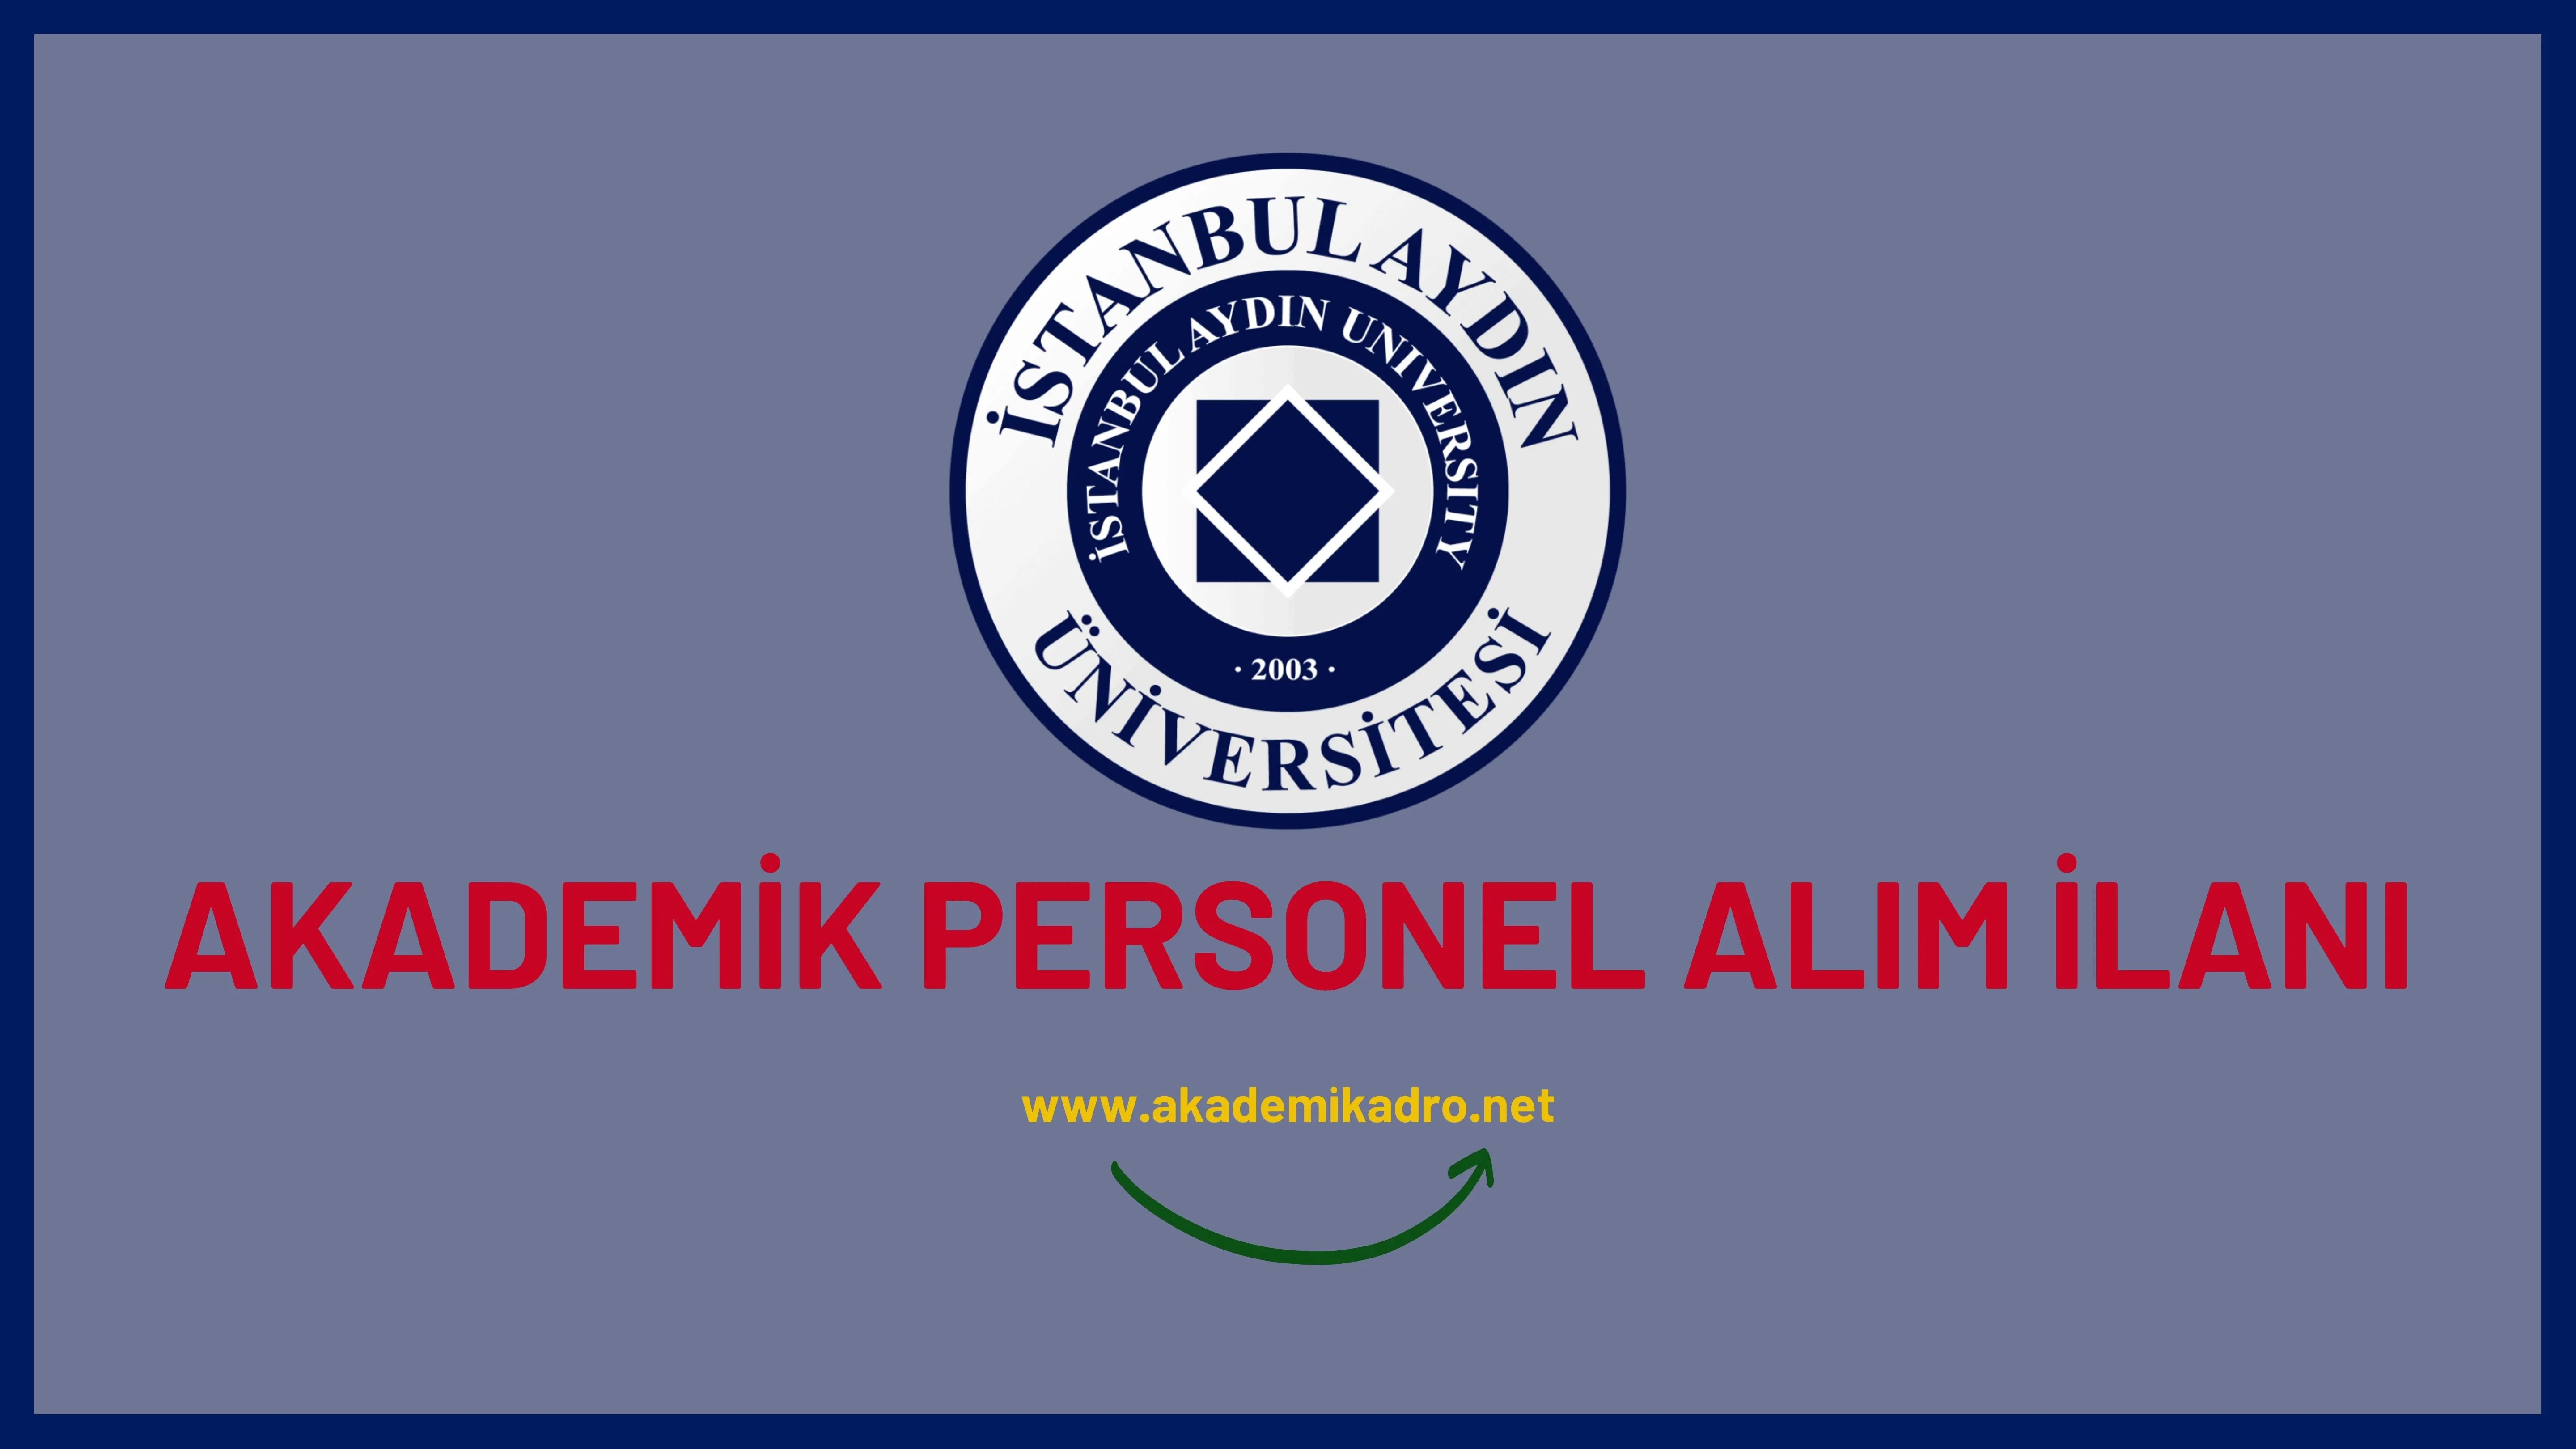 İstanbul Aydın Üniversitesi 22 Öğretim Görevlisi alacaktır. Son başvuru tarihi 05 Aralık 2022